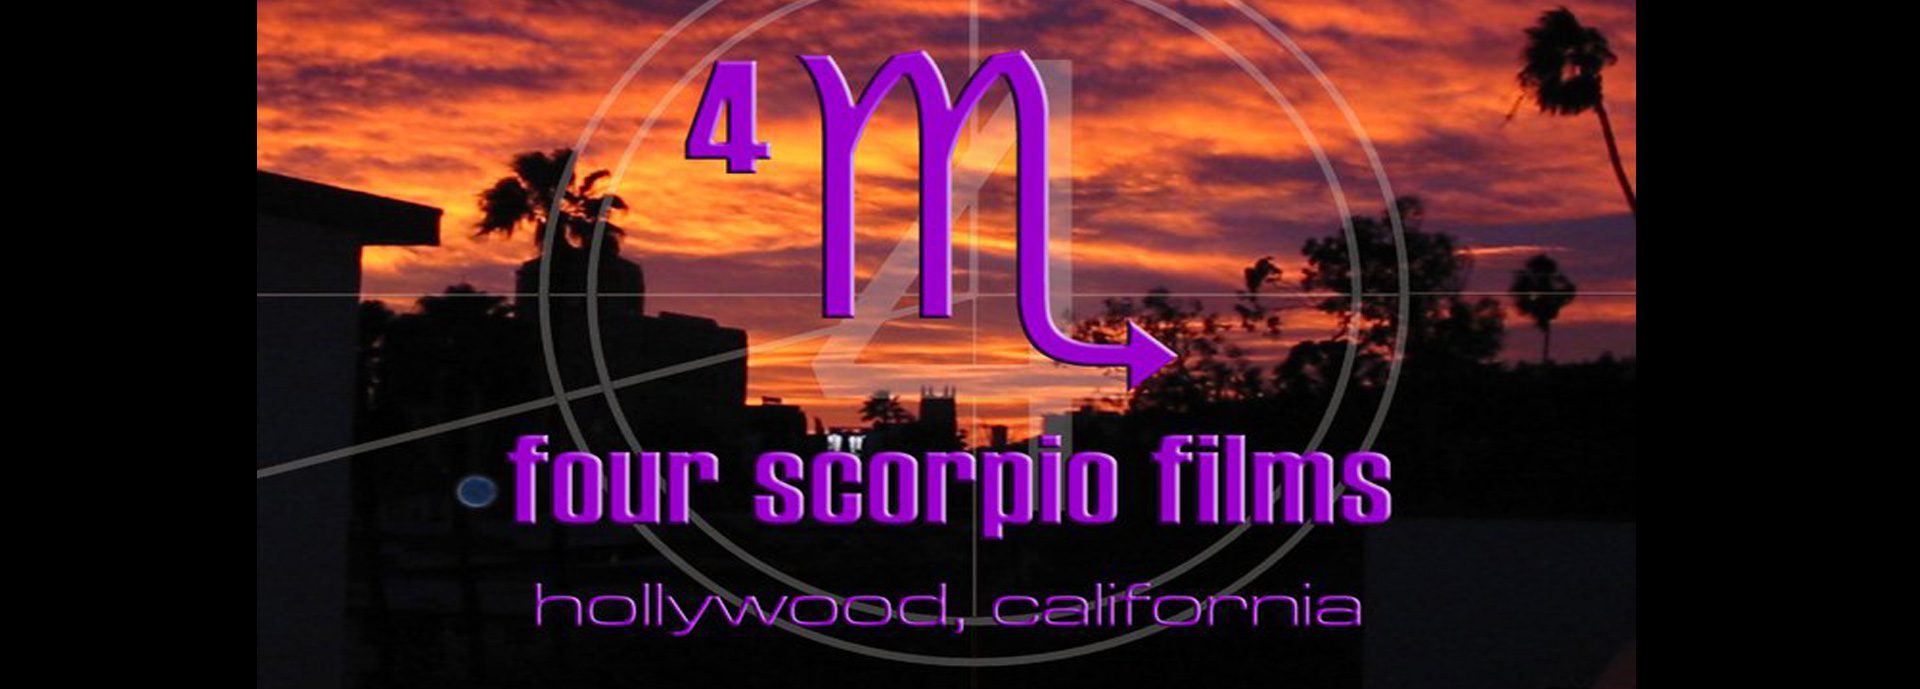 Four Scorpio Productions